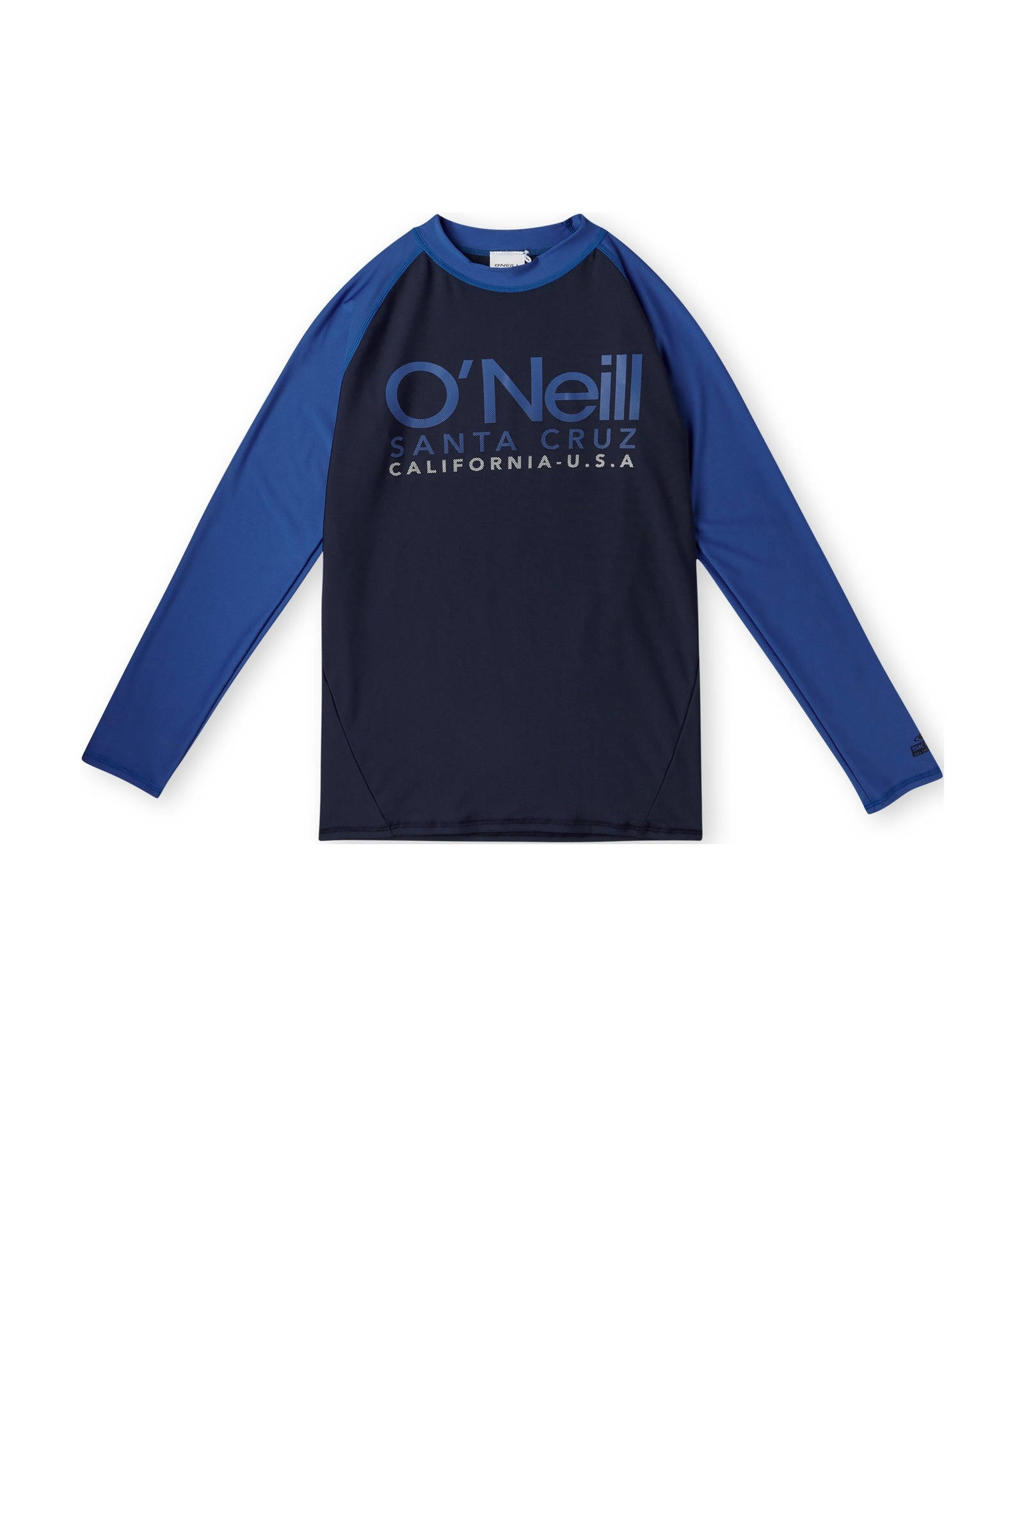 Donkerblauwe jongens en meisjes O'Neill UV shirt Cali van gerecycled polyamide met logo dessin, lange mouwen en ronde hals